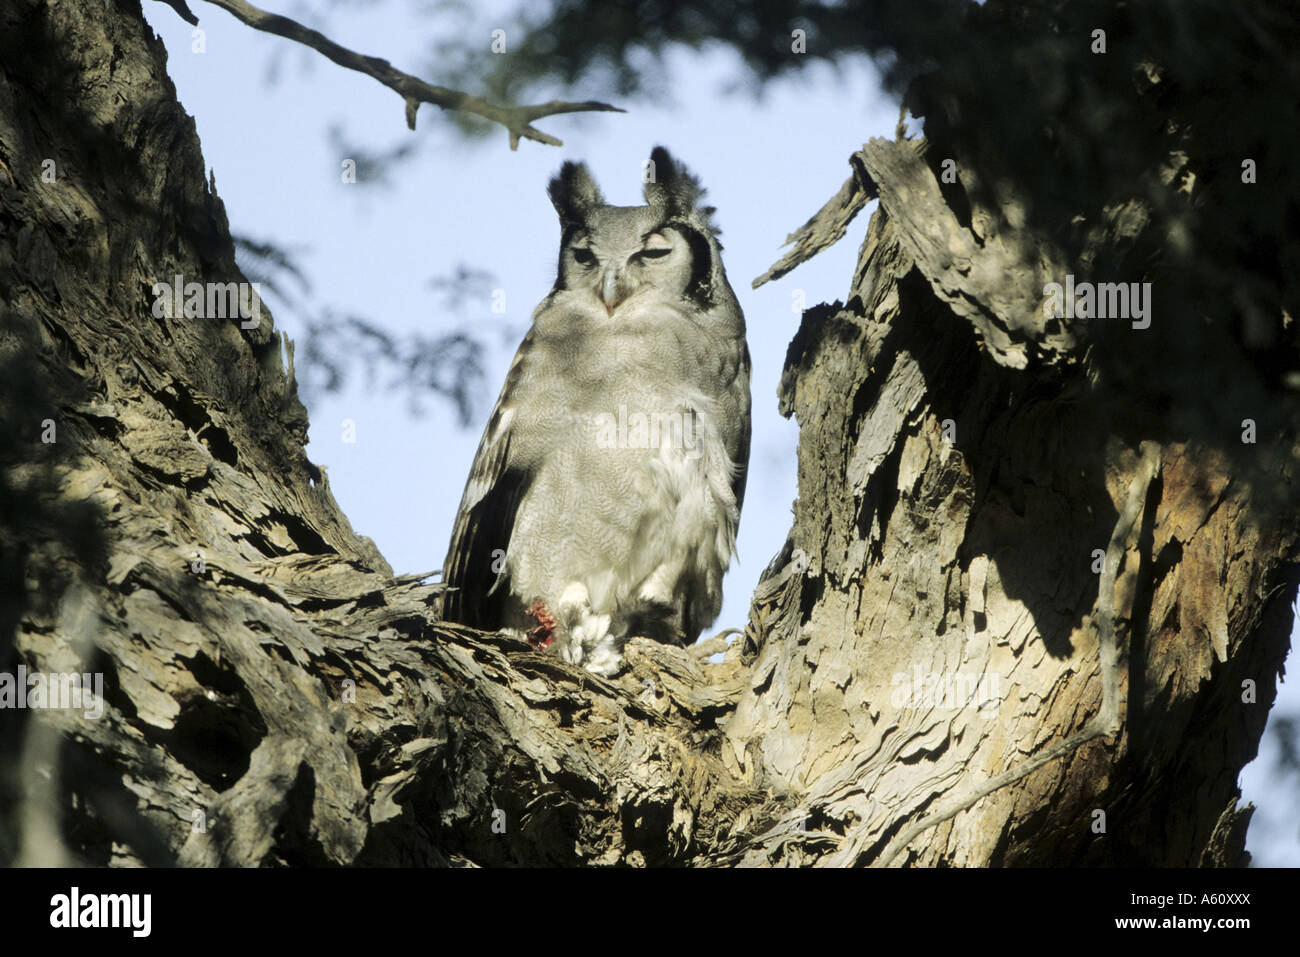 Chouette de verreaux, Giant Eagle Owl (Bubo lacteus), seul animal accroupi dans un arbre Banque D'Images